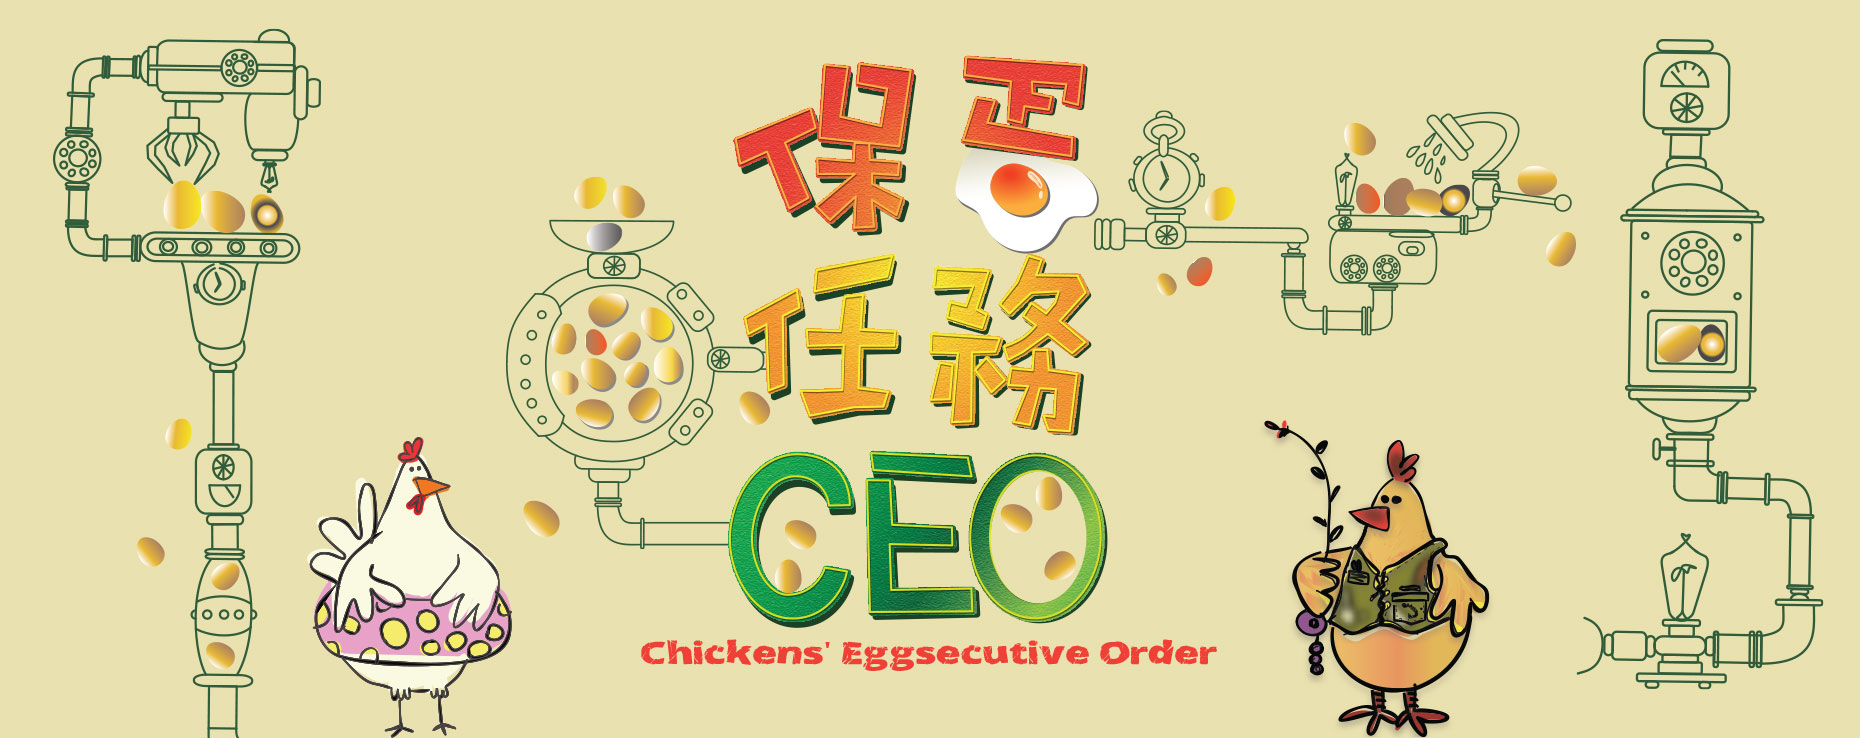 <em>Chickens' Eggsecutive Order</em>